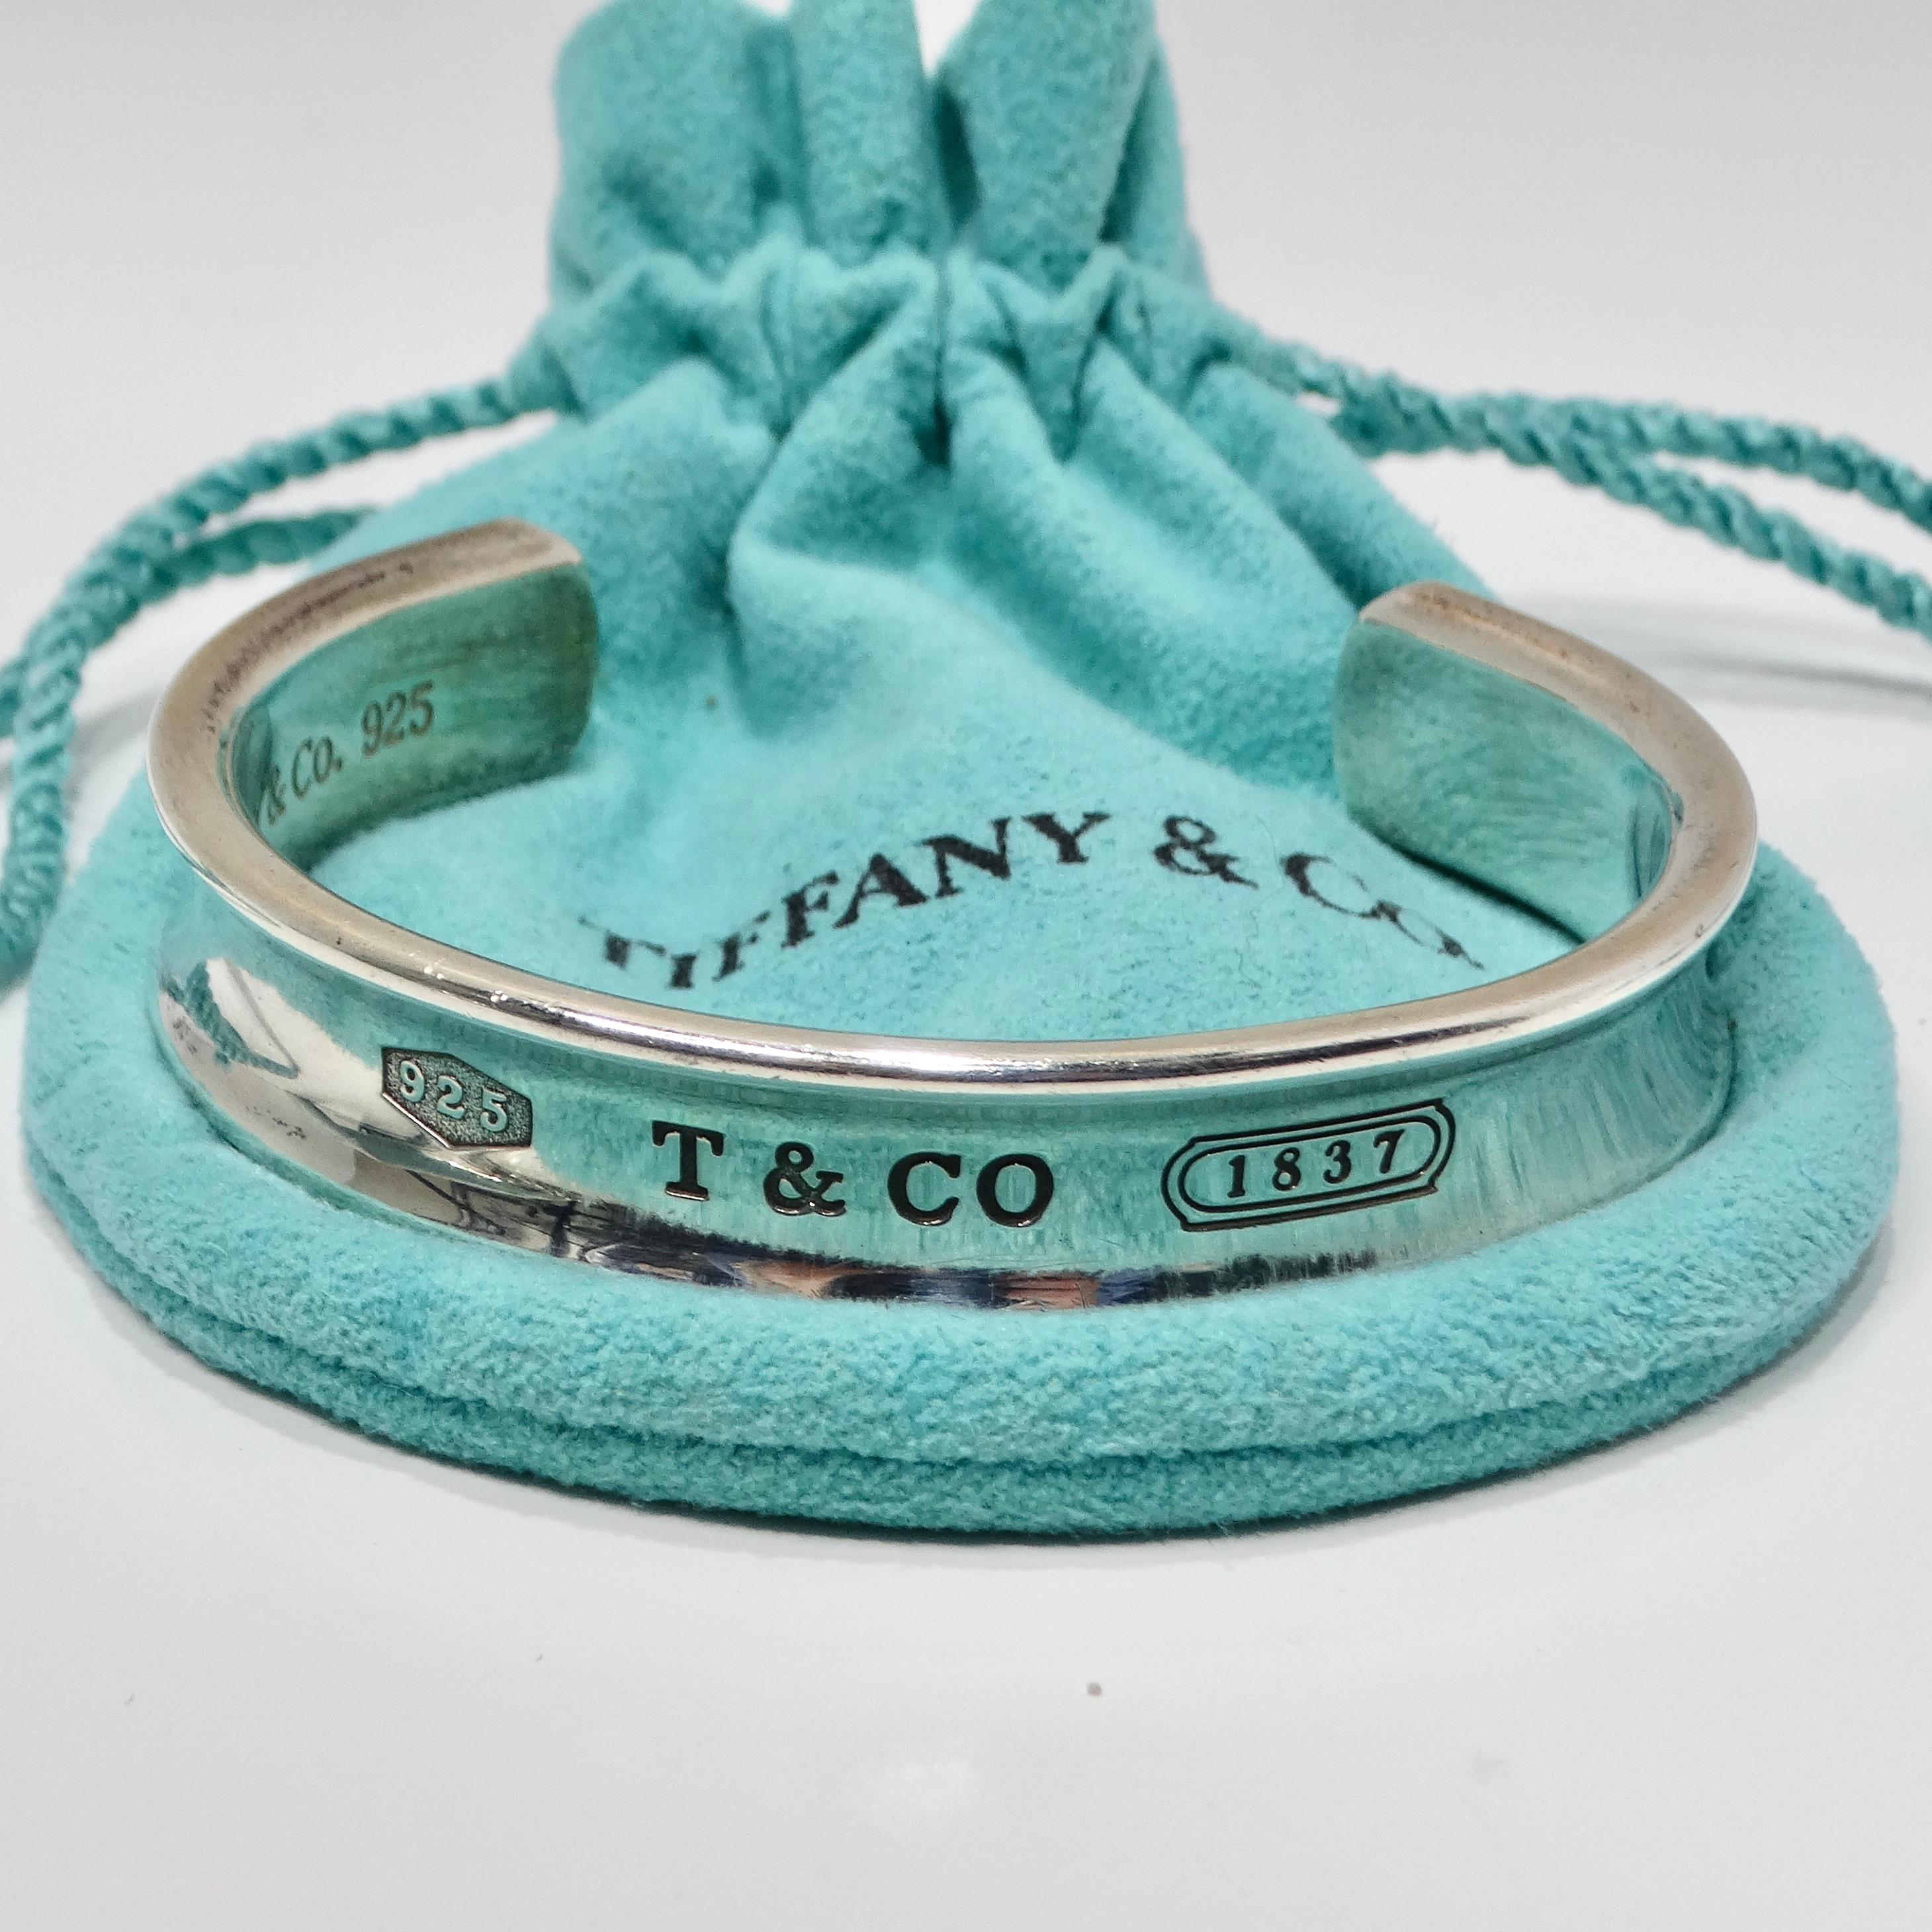 1997 tiffany & co. 925 bracelet price